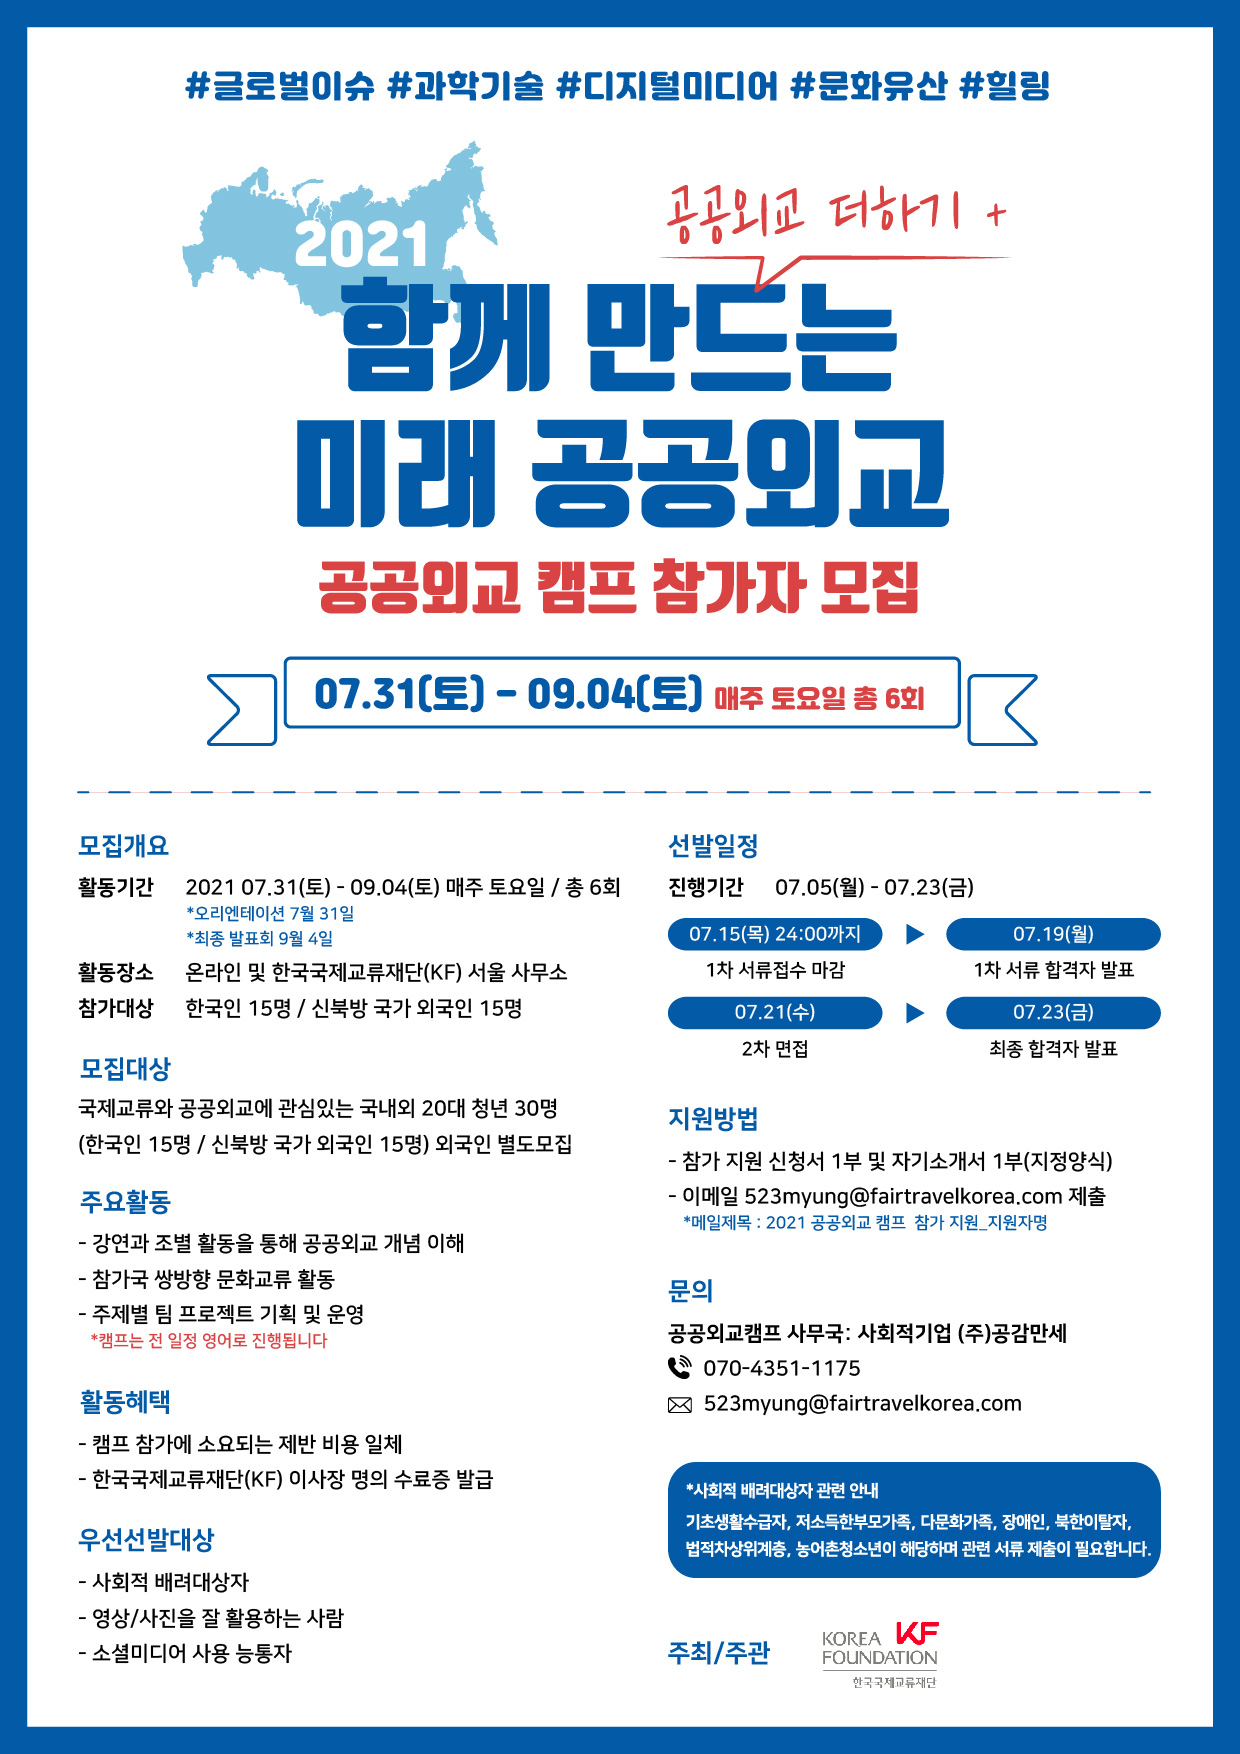 [한국국제교류재단] 2021 공공외교캠프 참가자 모집(7.12 양식수정 확인요망)